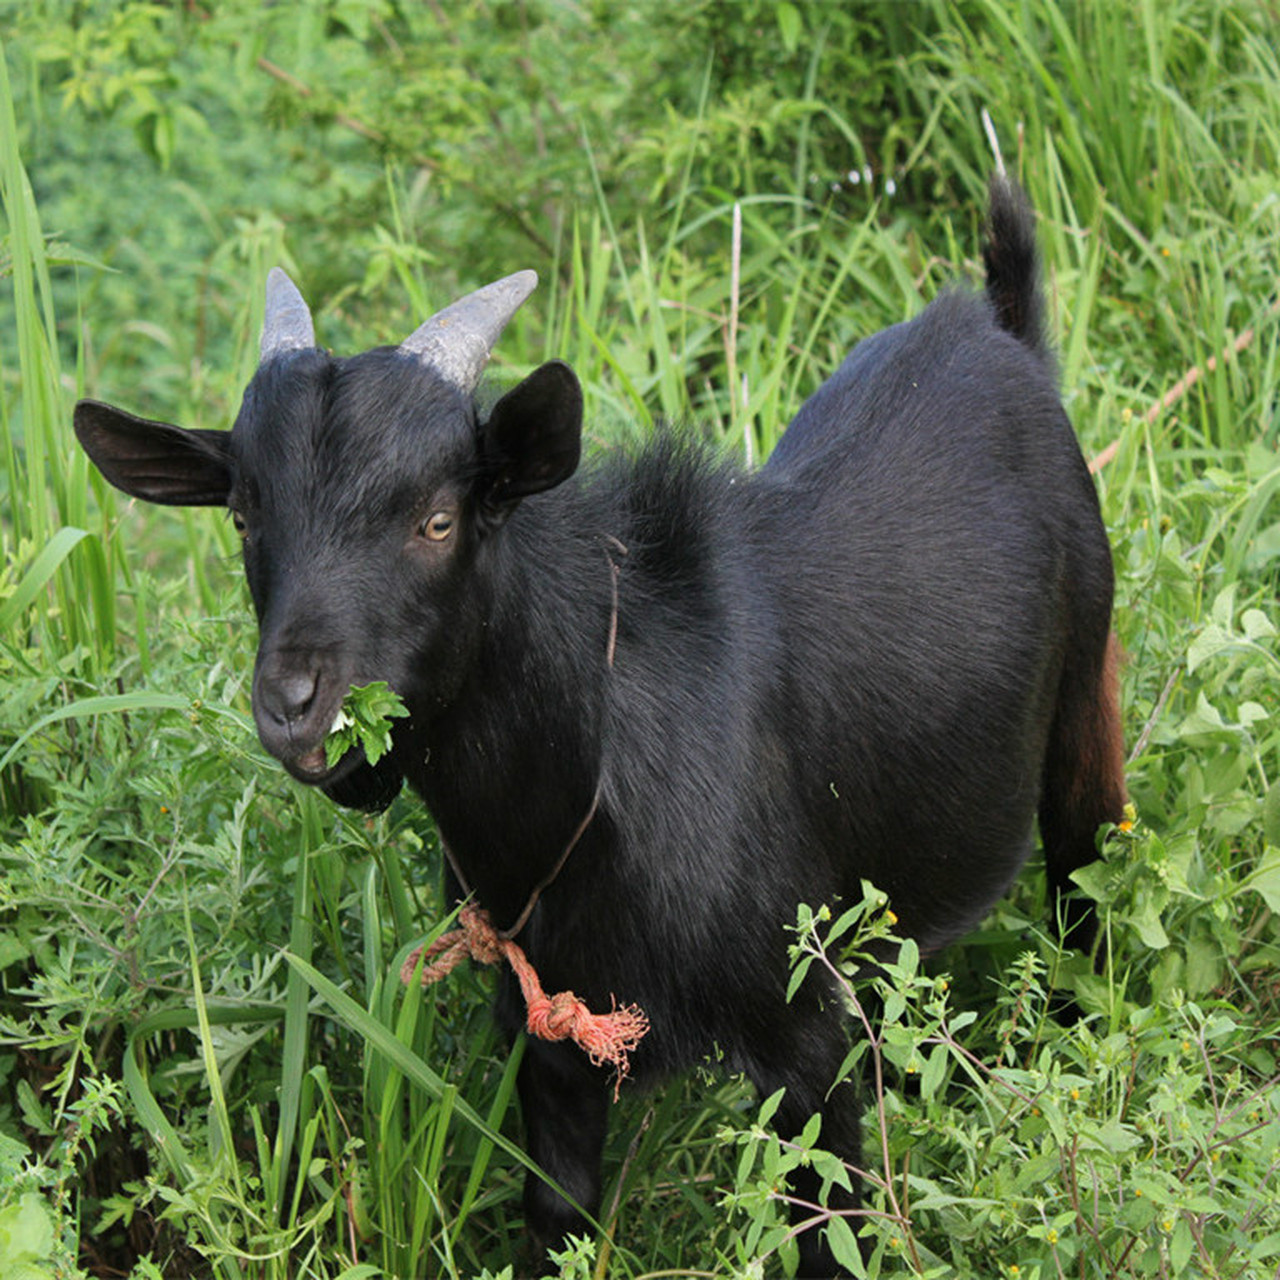 望谟黑山羊是贵州省黑山羊中最具独特品质的一个山羊品种,它的主要